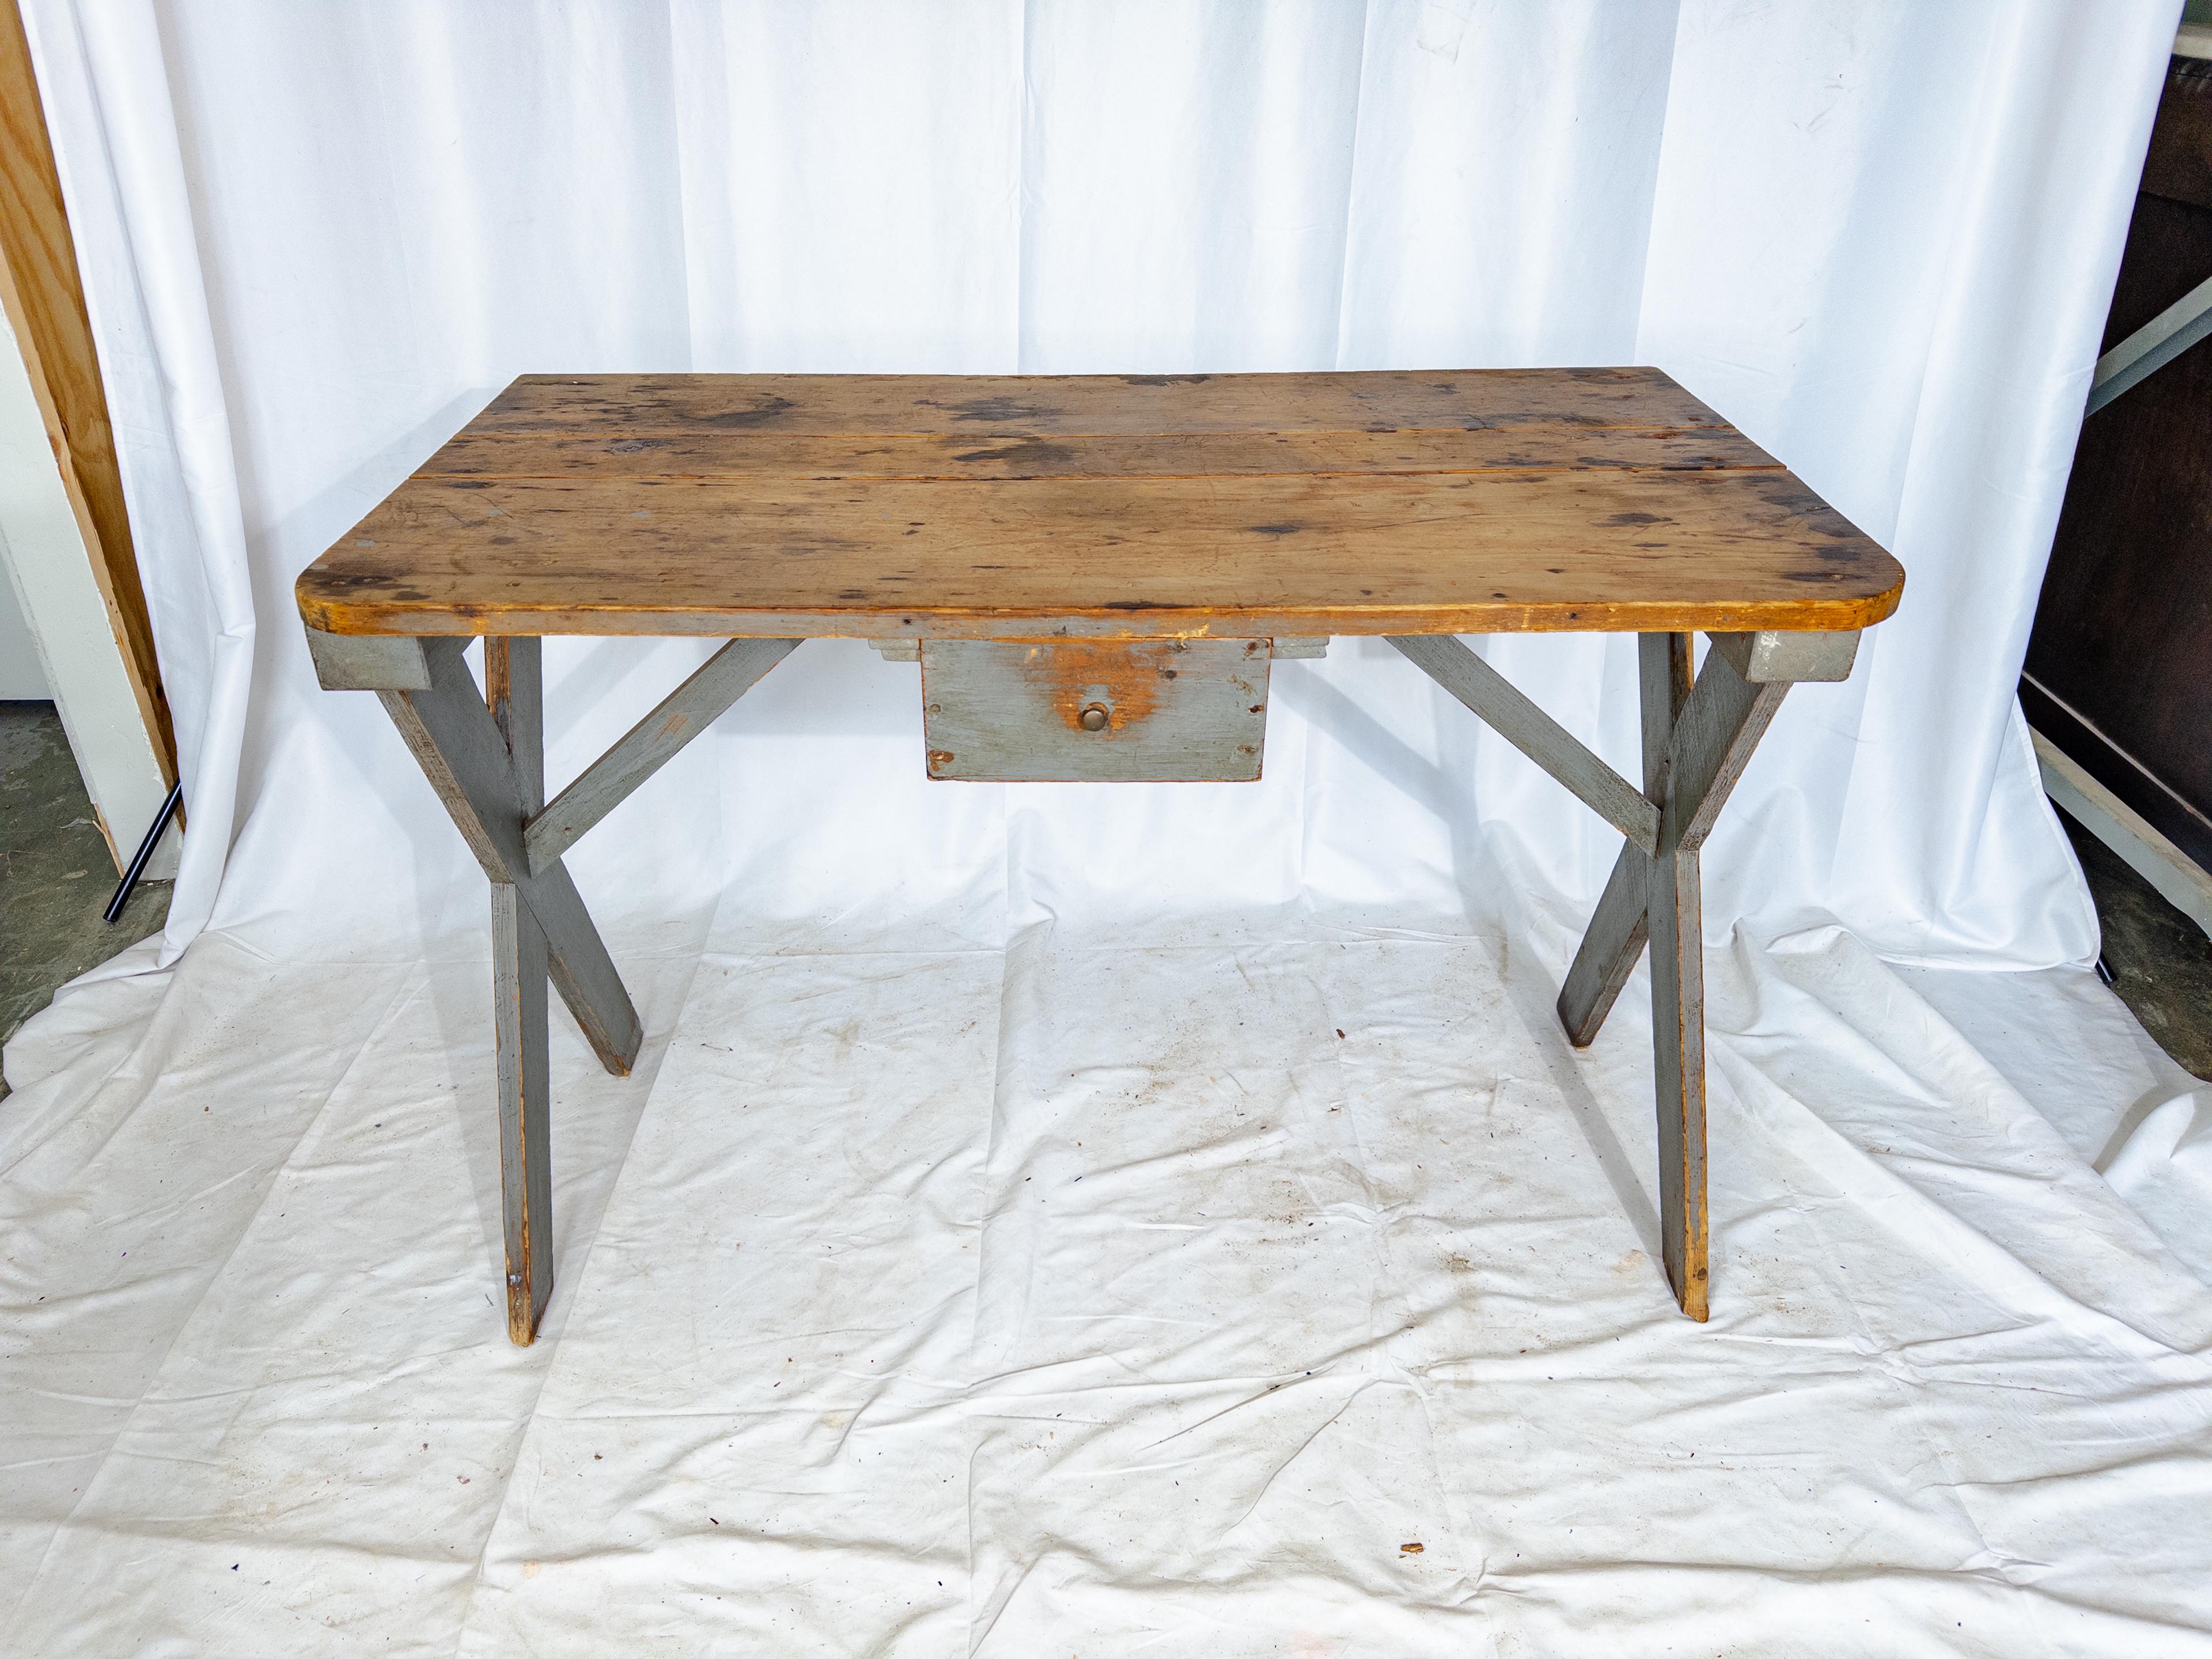 Cette table de ferme suédoise du début du XXe siècle témoigne de la simplicité et de la fonctionnalité, et dégage un charme rustique grâce à son élégance discrète. Fabriqué en bois robuste, le corps de la table porte une sereine couche de peinture